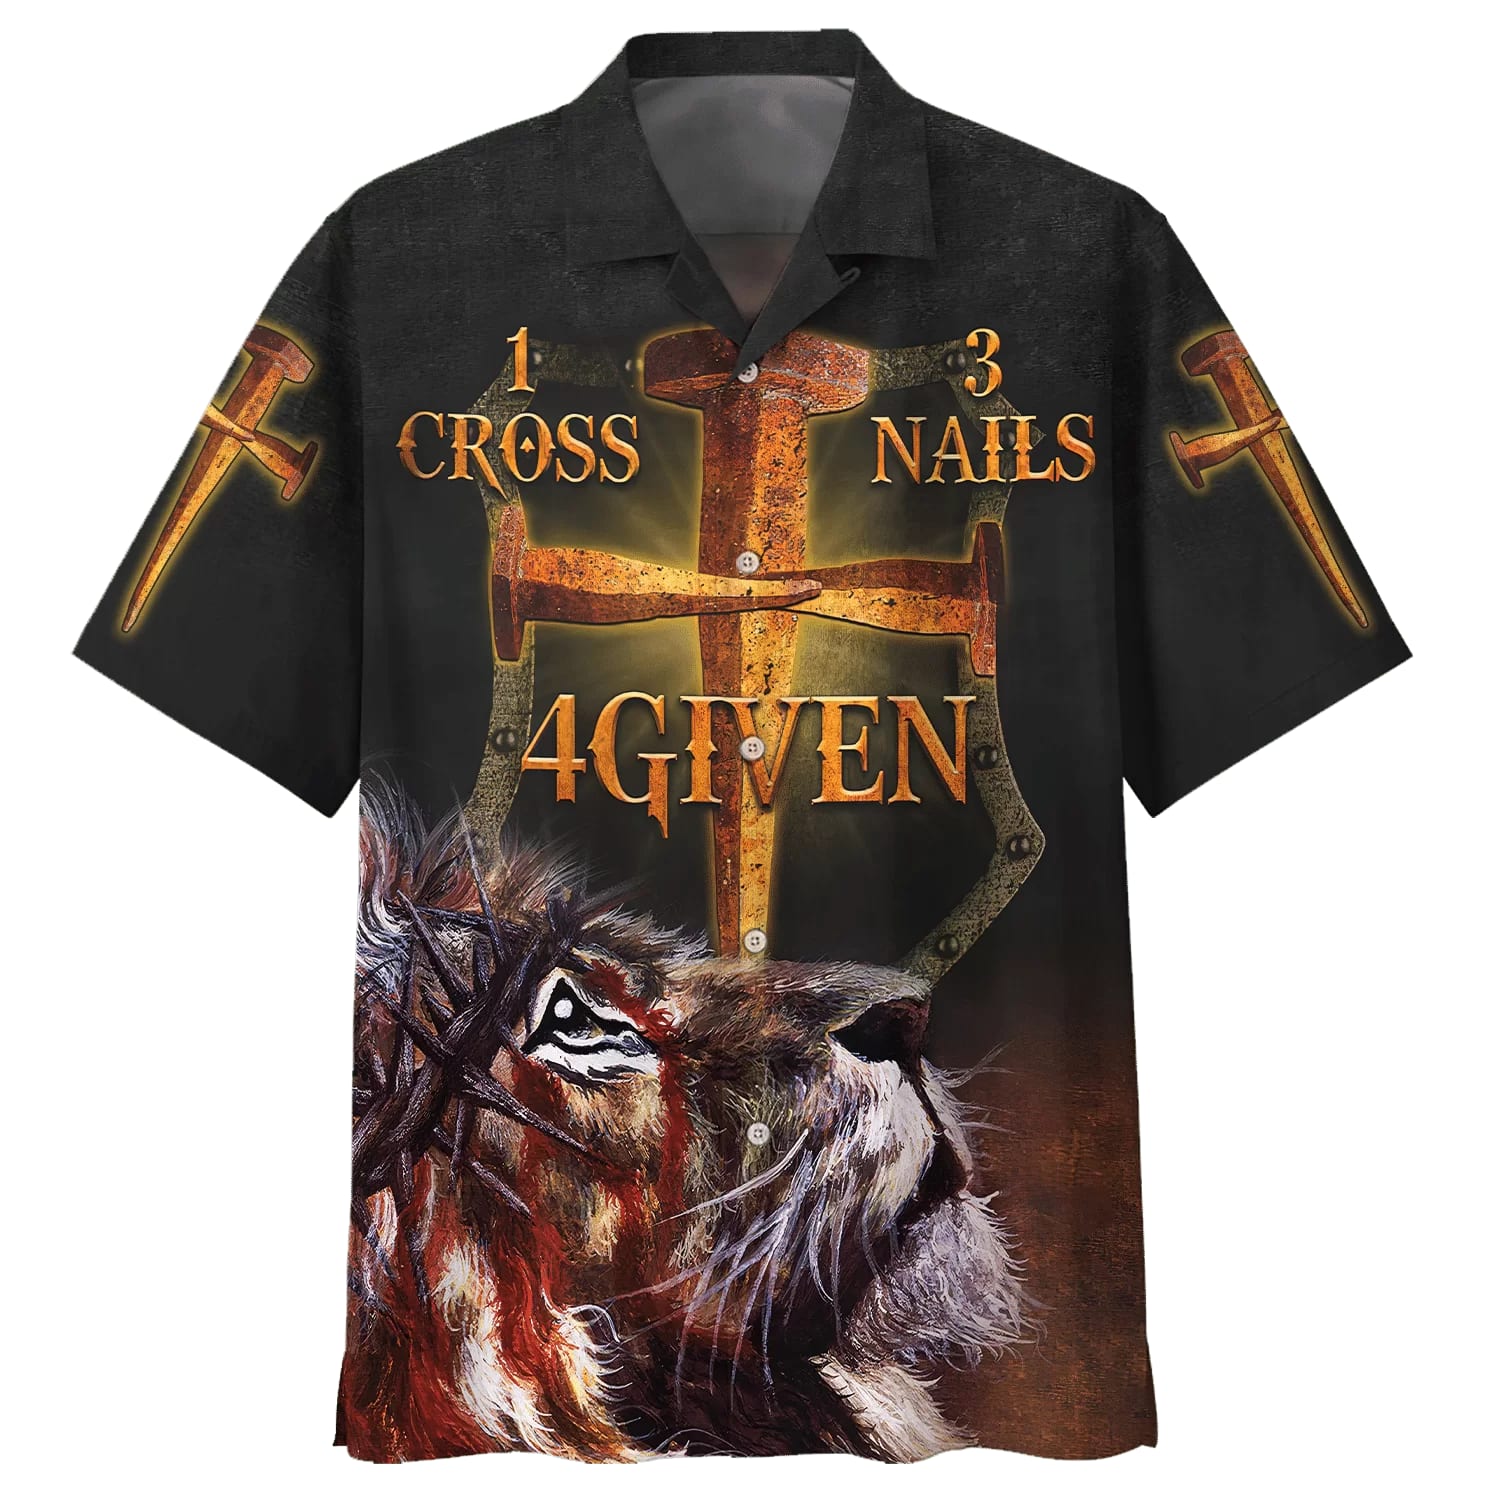 1 Cross 3 Nails 4given Lion Hawaiian Shirts - Christian Hawaiian Shirt - Hawaiian Shirts For Men